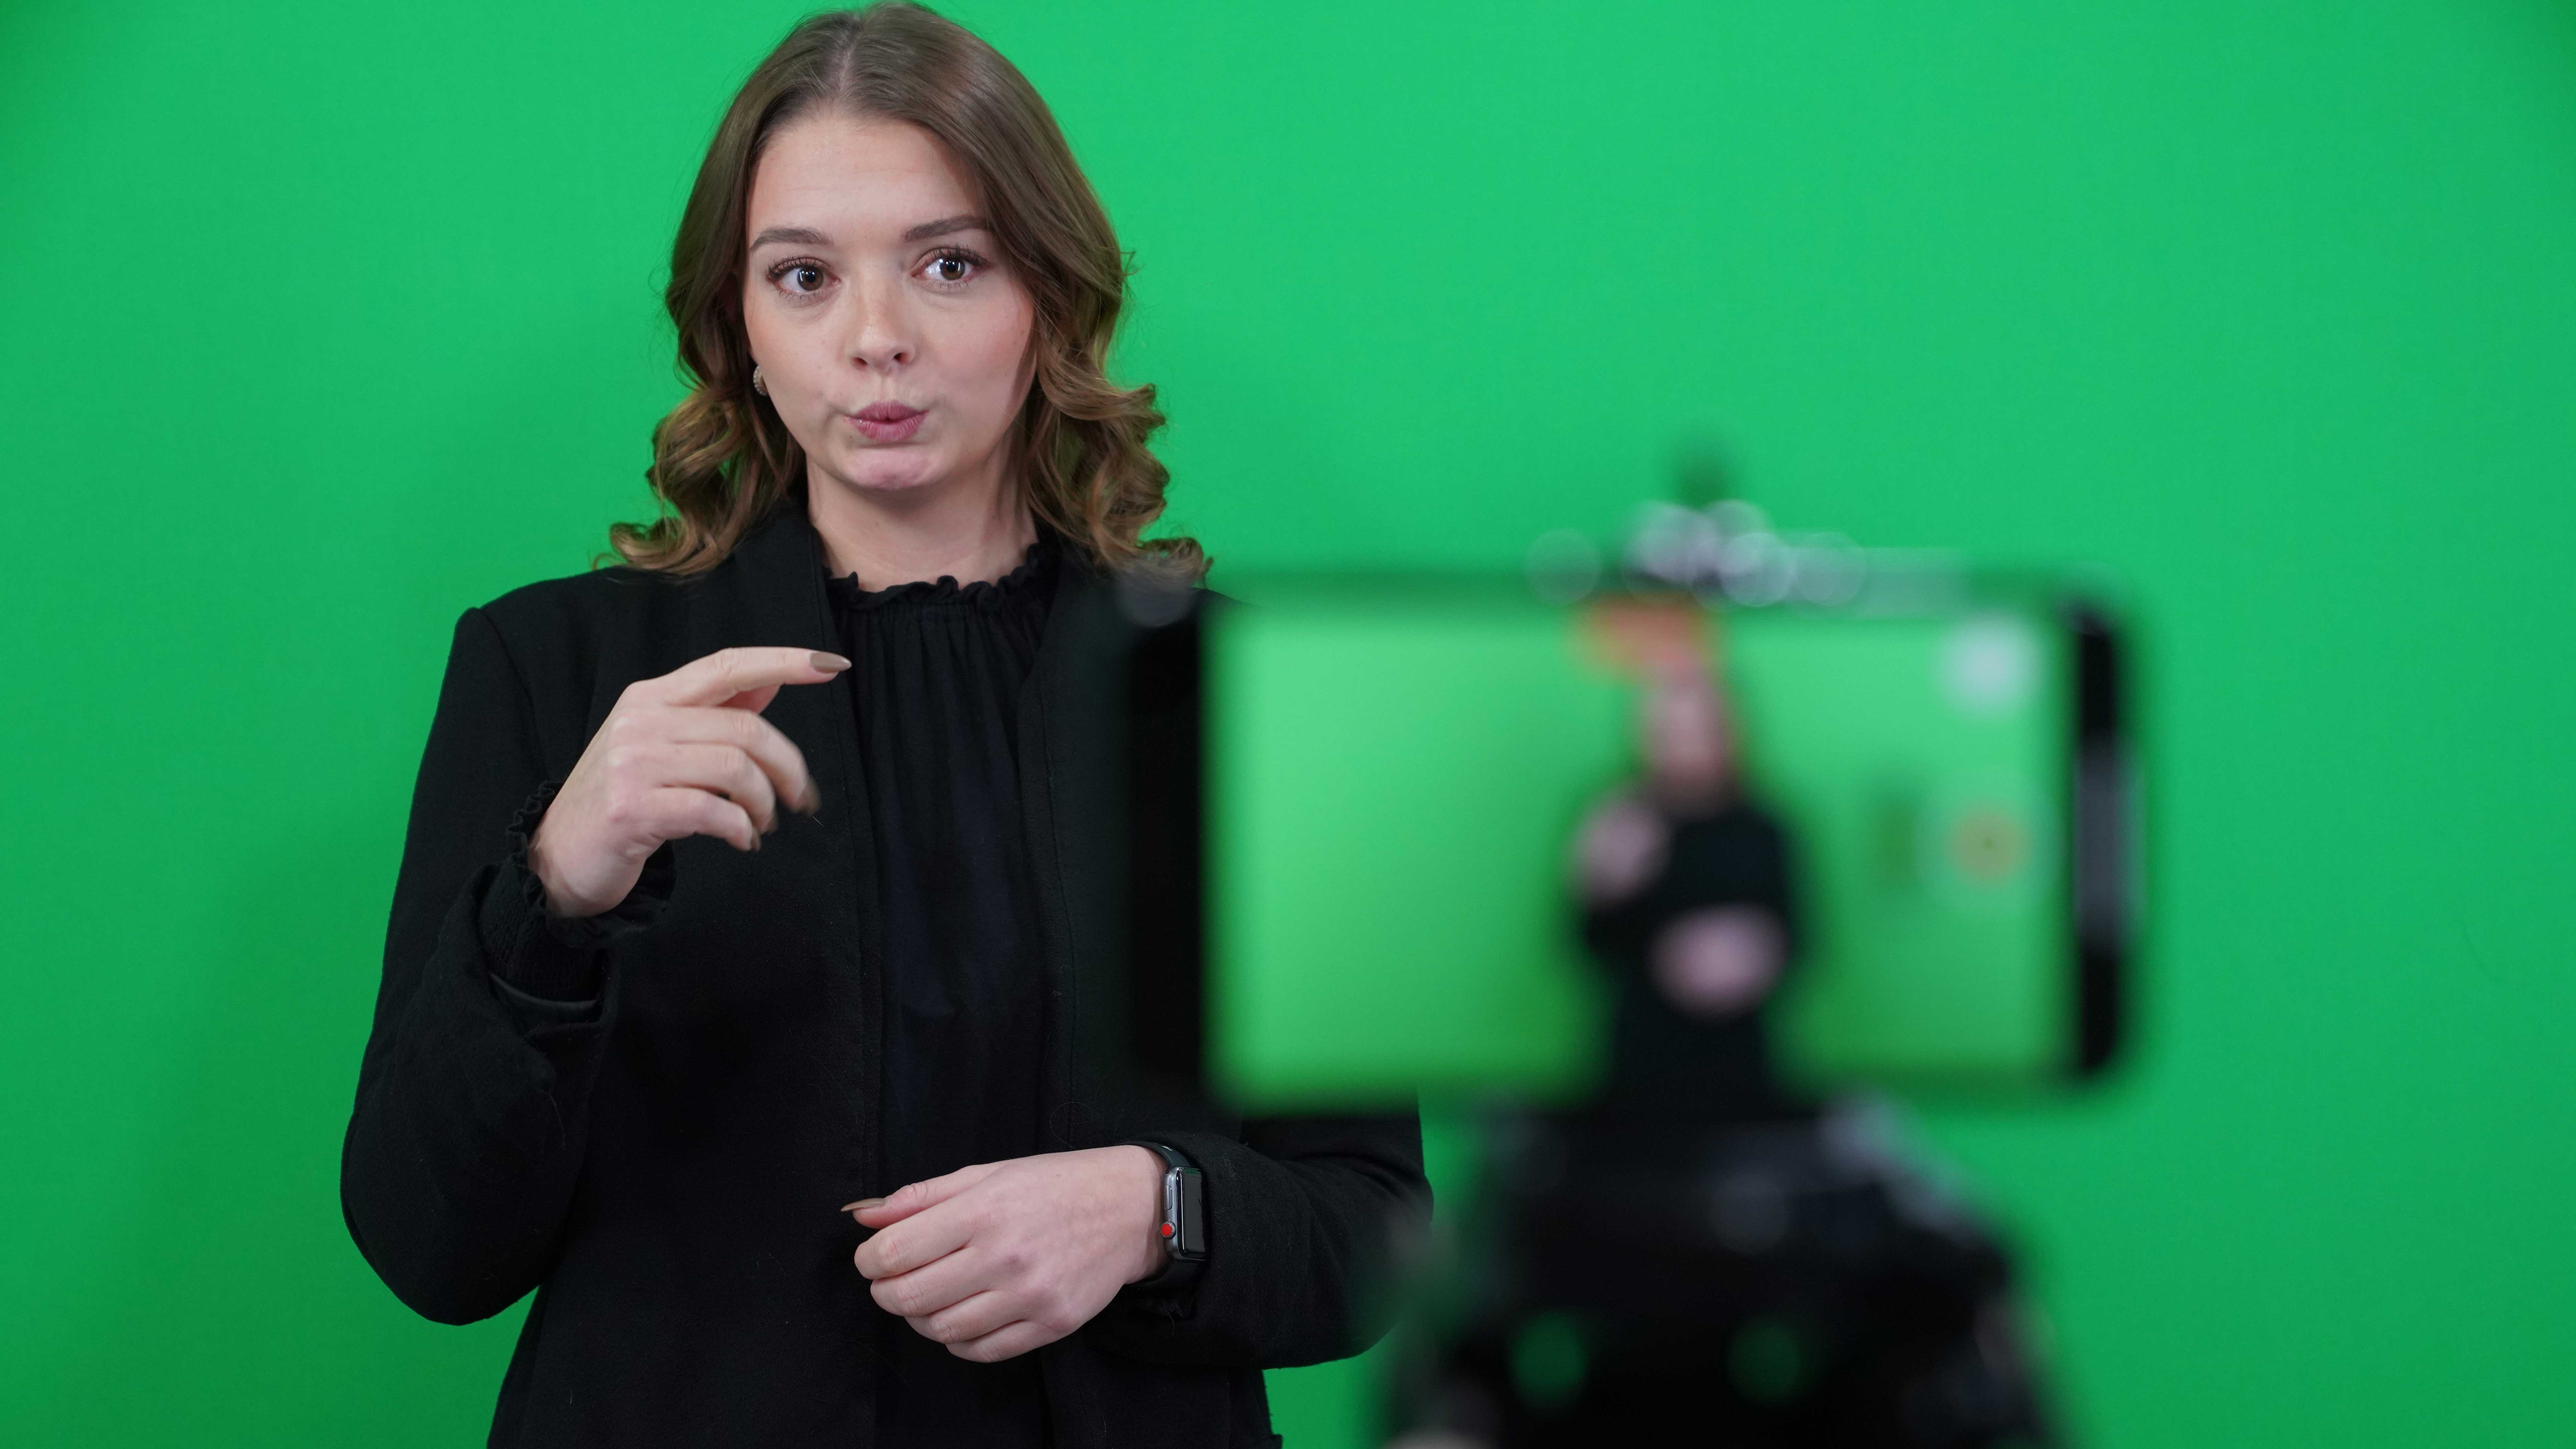 Ung kvinna med mer än axellångt brunt hår blir filmad med mobilkamera när hon tecknar på teckenspråk. Green screen bakom.